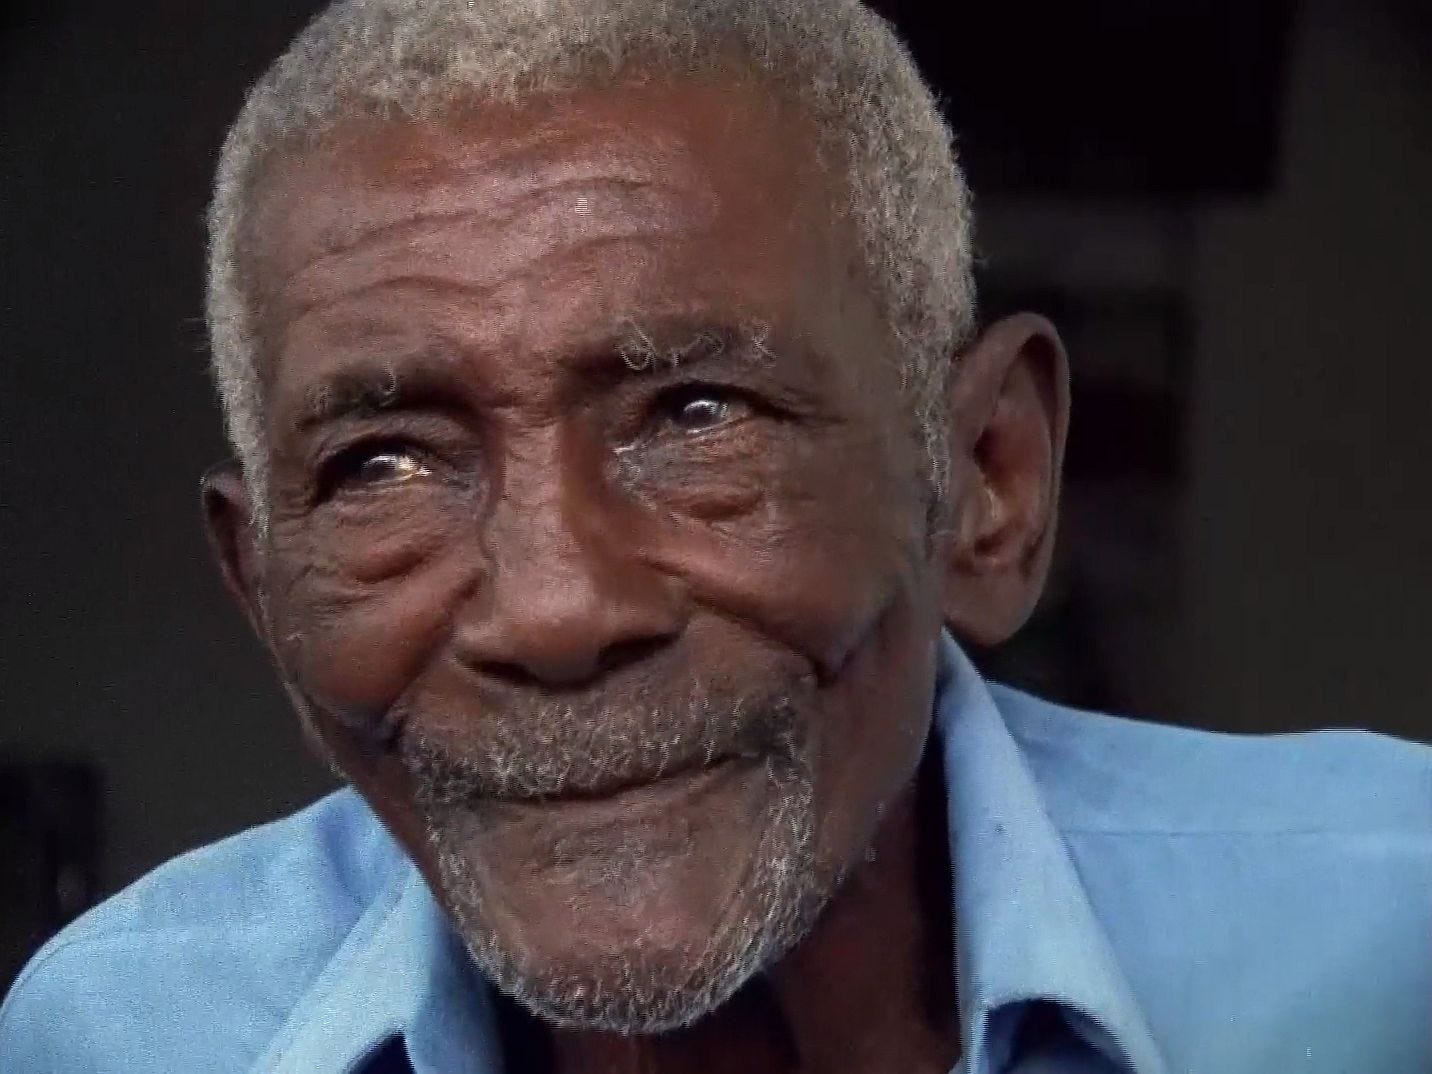 Retrato em close de um homem idoso e negro. Ele tem a barba rala e grisalha e esboça um sorriso. Usa camisa azul clara e seus olhos estão lacrimejando.